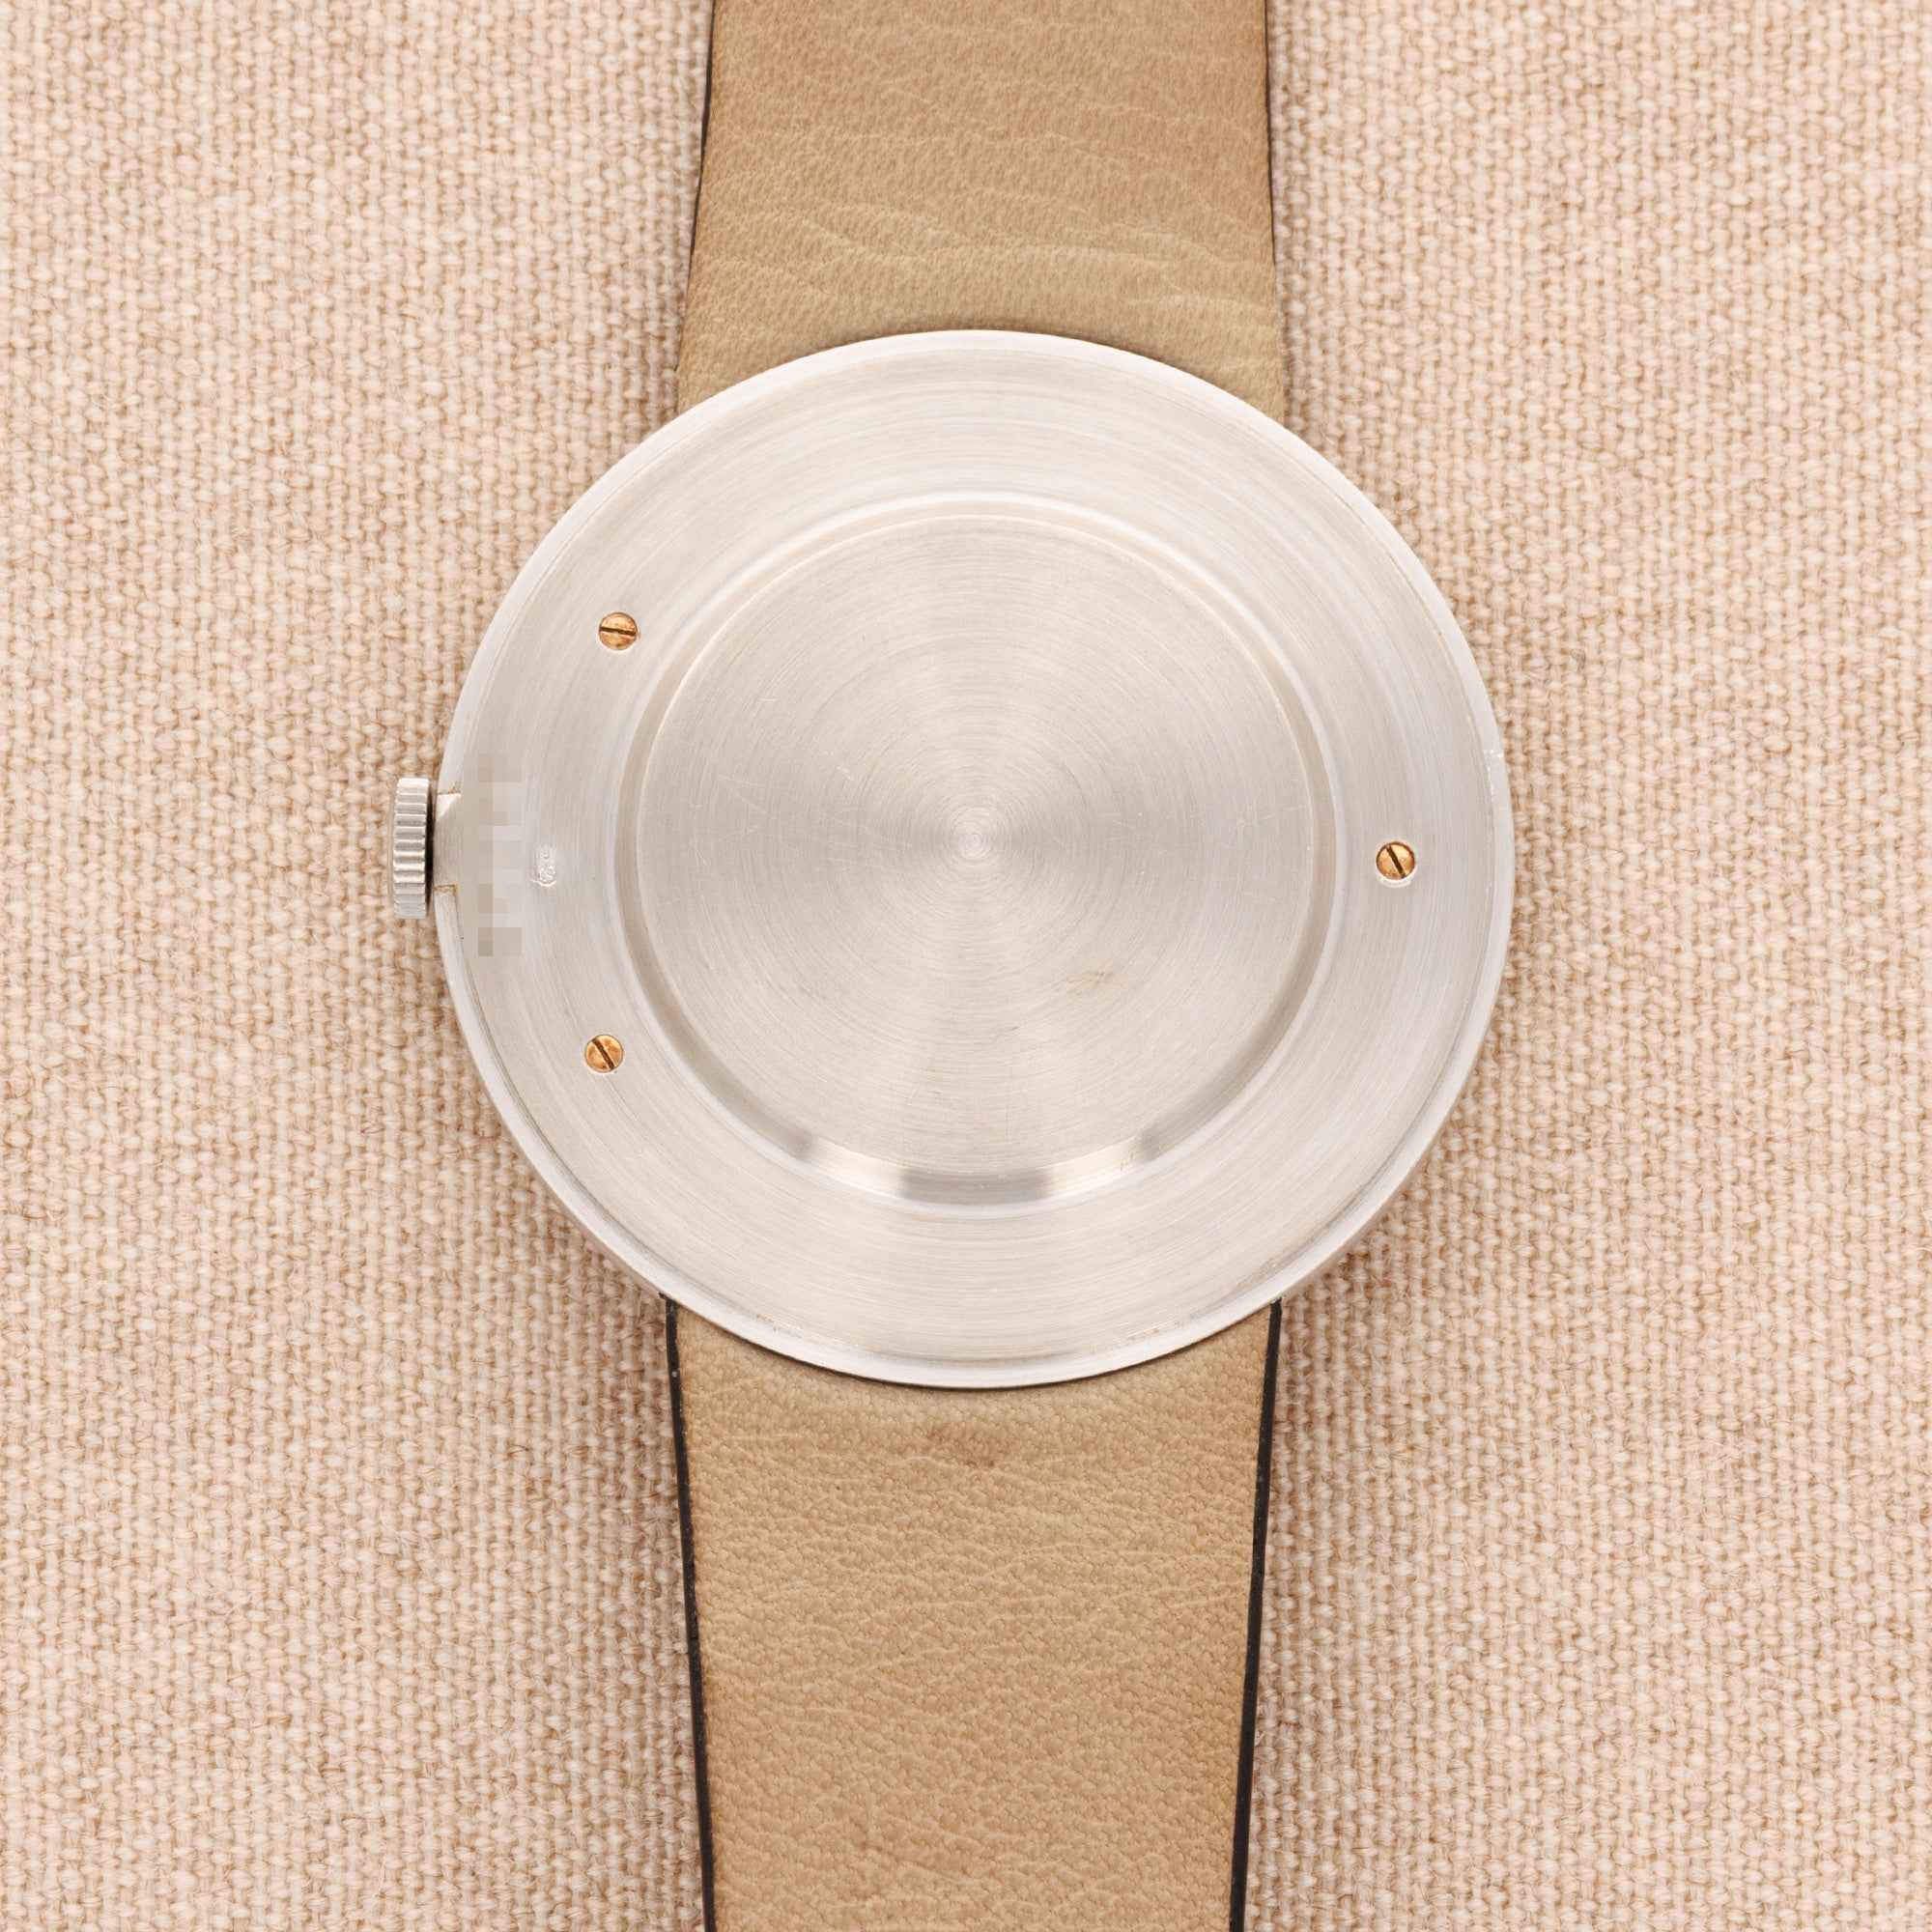 Audemars Piguet - Audemars Piguet White Gold Disco Volante Watch Ref. 5093 - The Keystone Watches